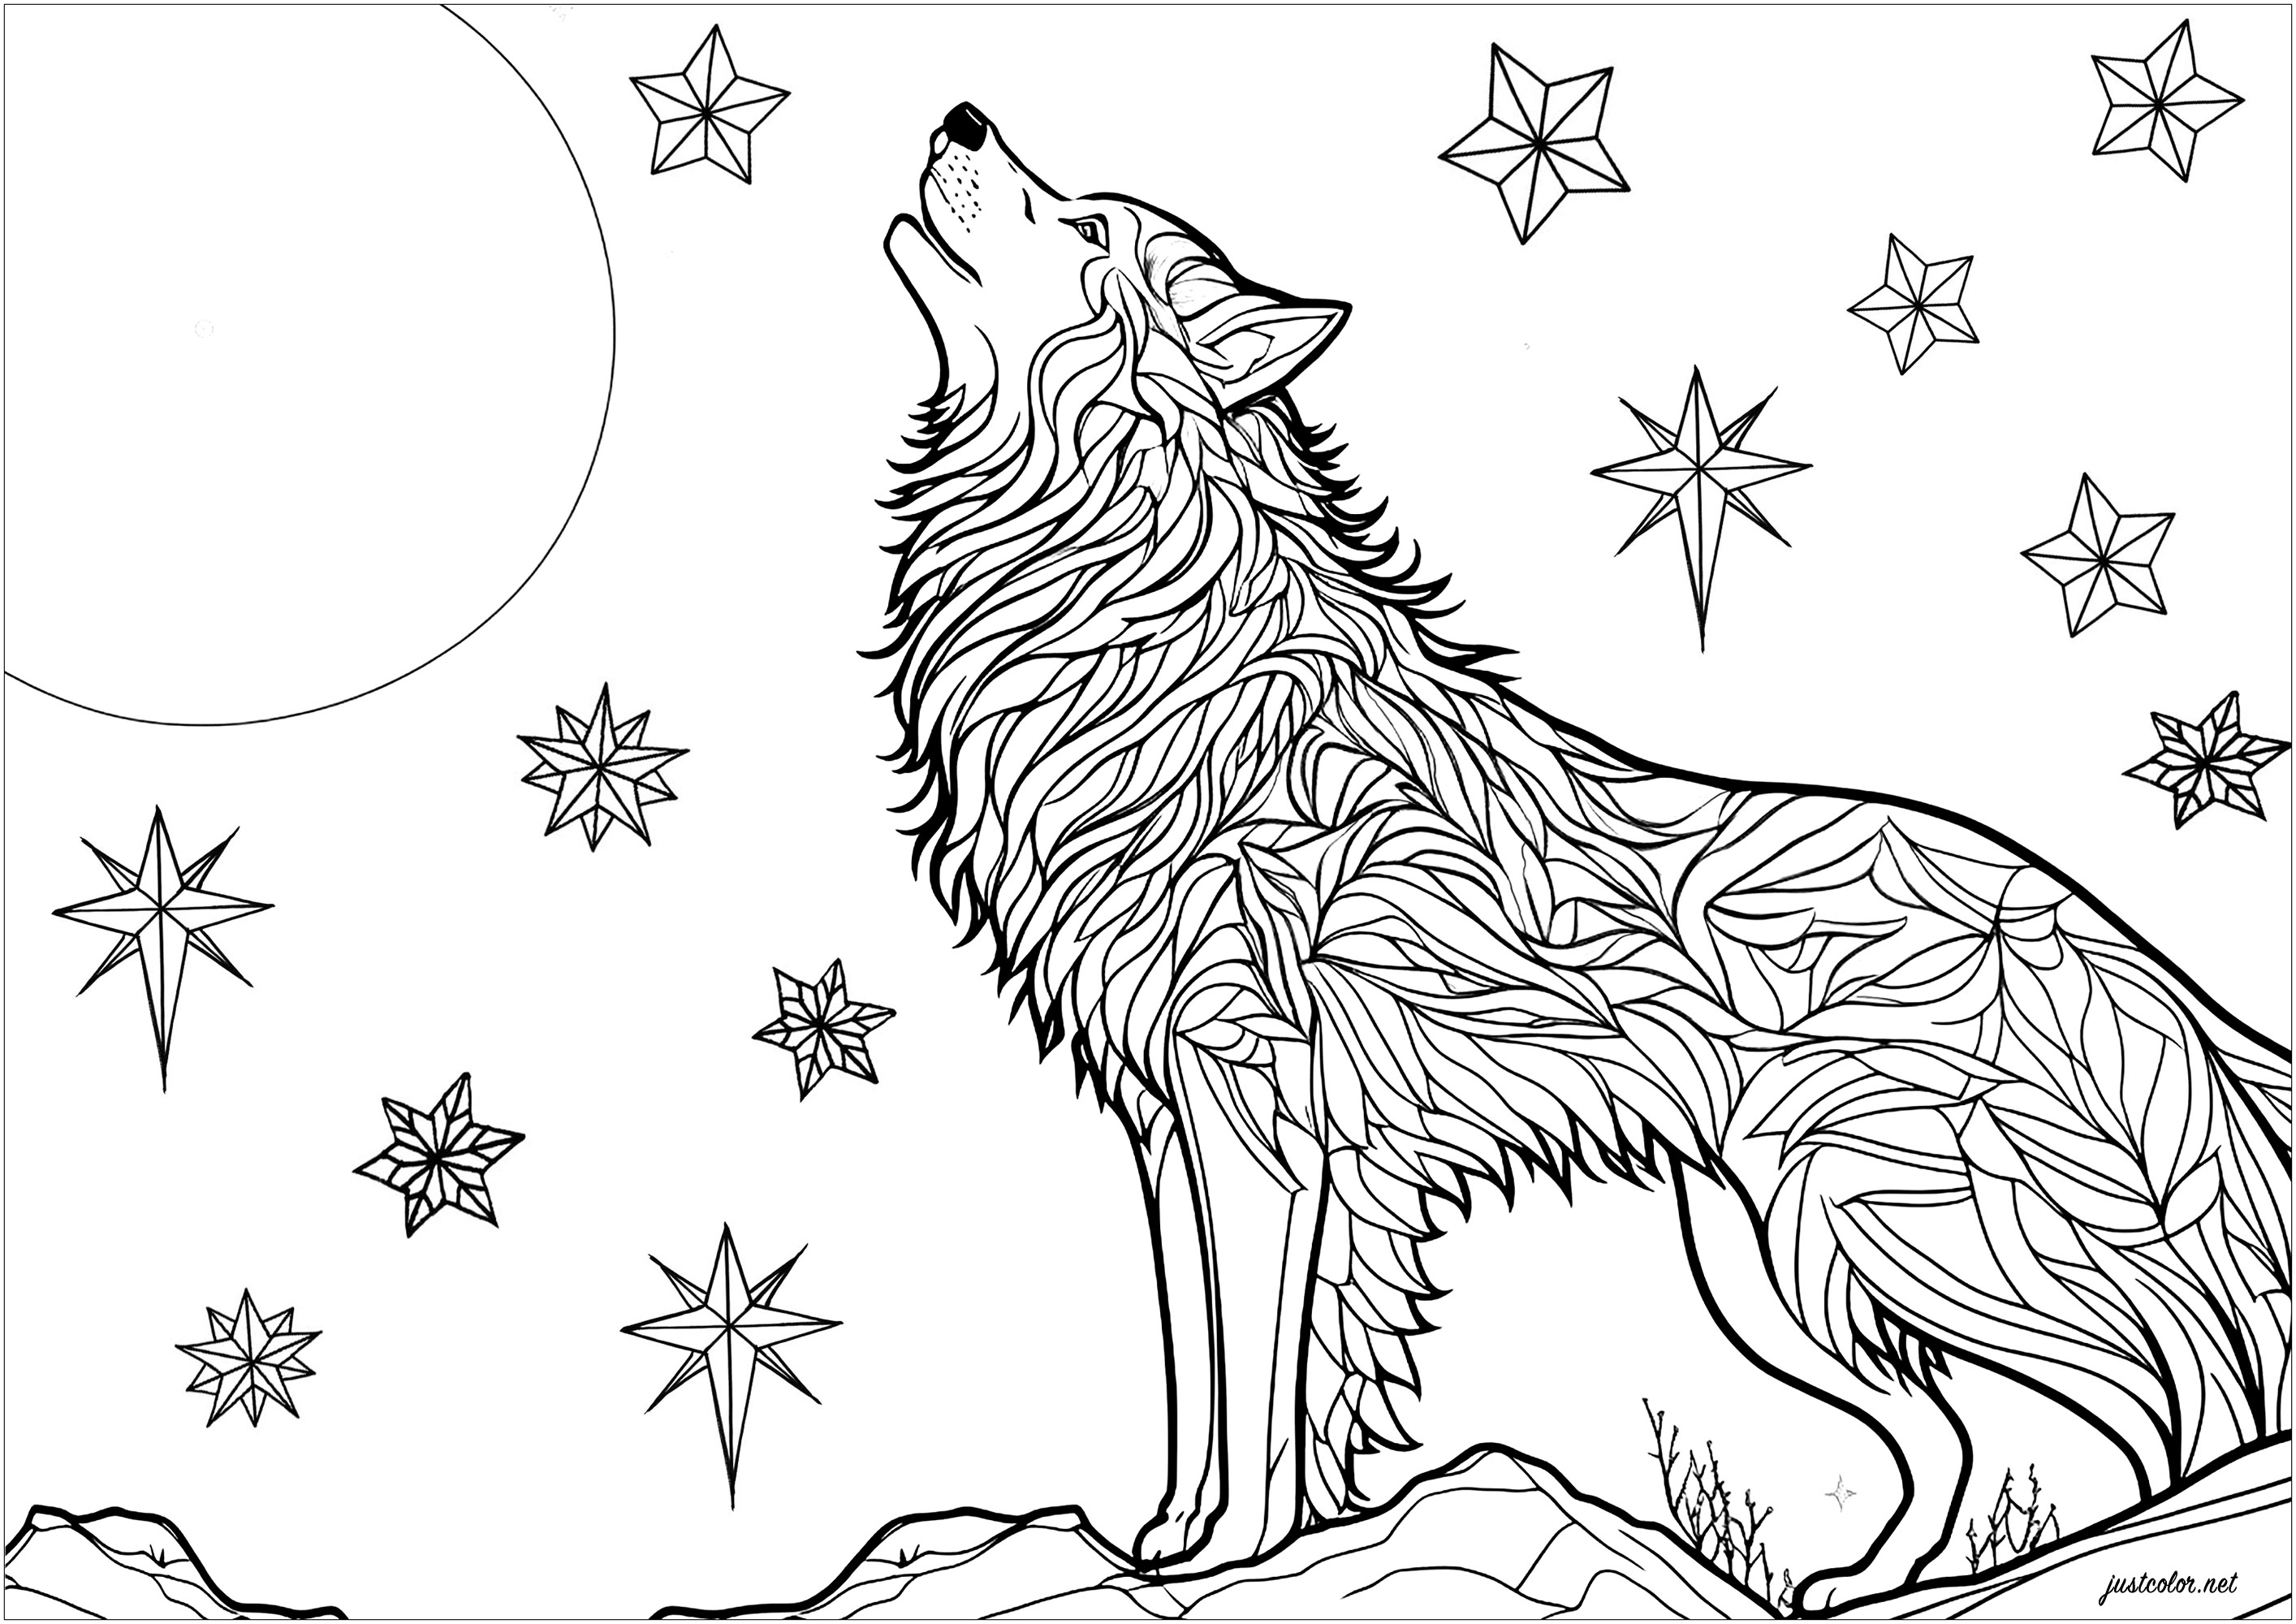 Coloriage d'un loup hurlant au clair de lune. Magnifique scène avec un loup hurlant pendant la nuit, posé sur un rocher. On peut voir des étoiles scintillantes dans le ciel nocturne. Les motifs de la fourrure du loup peuvent être colorés indépendamment, pour un résultat plein de mystère et de magie, Artiste : IAsabelle